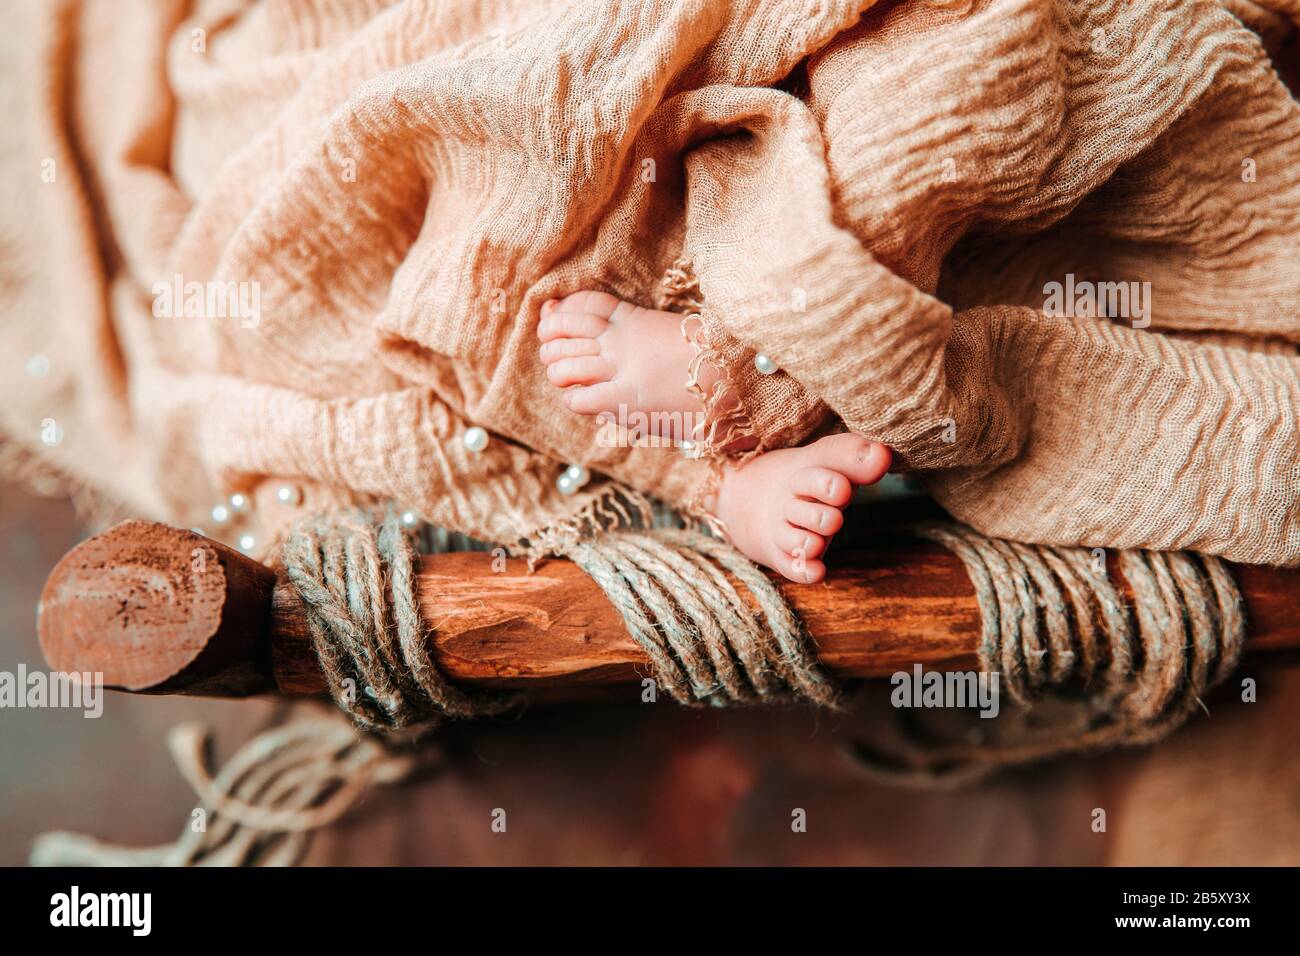 Un neonato cute bambino dormire in una culla di legno vintage con piede e dita aperte Foto Stock